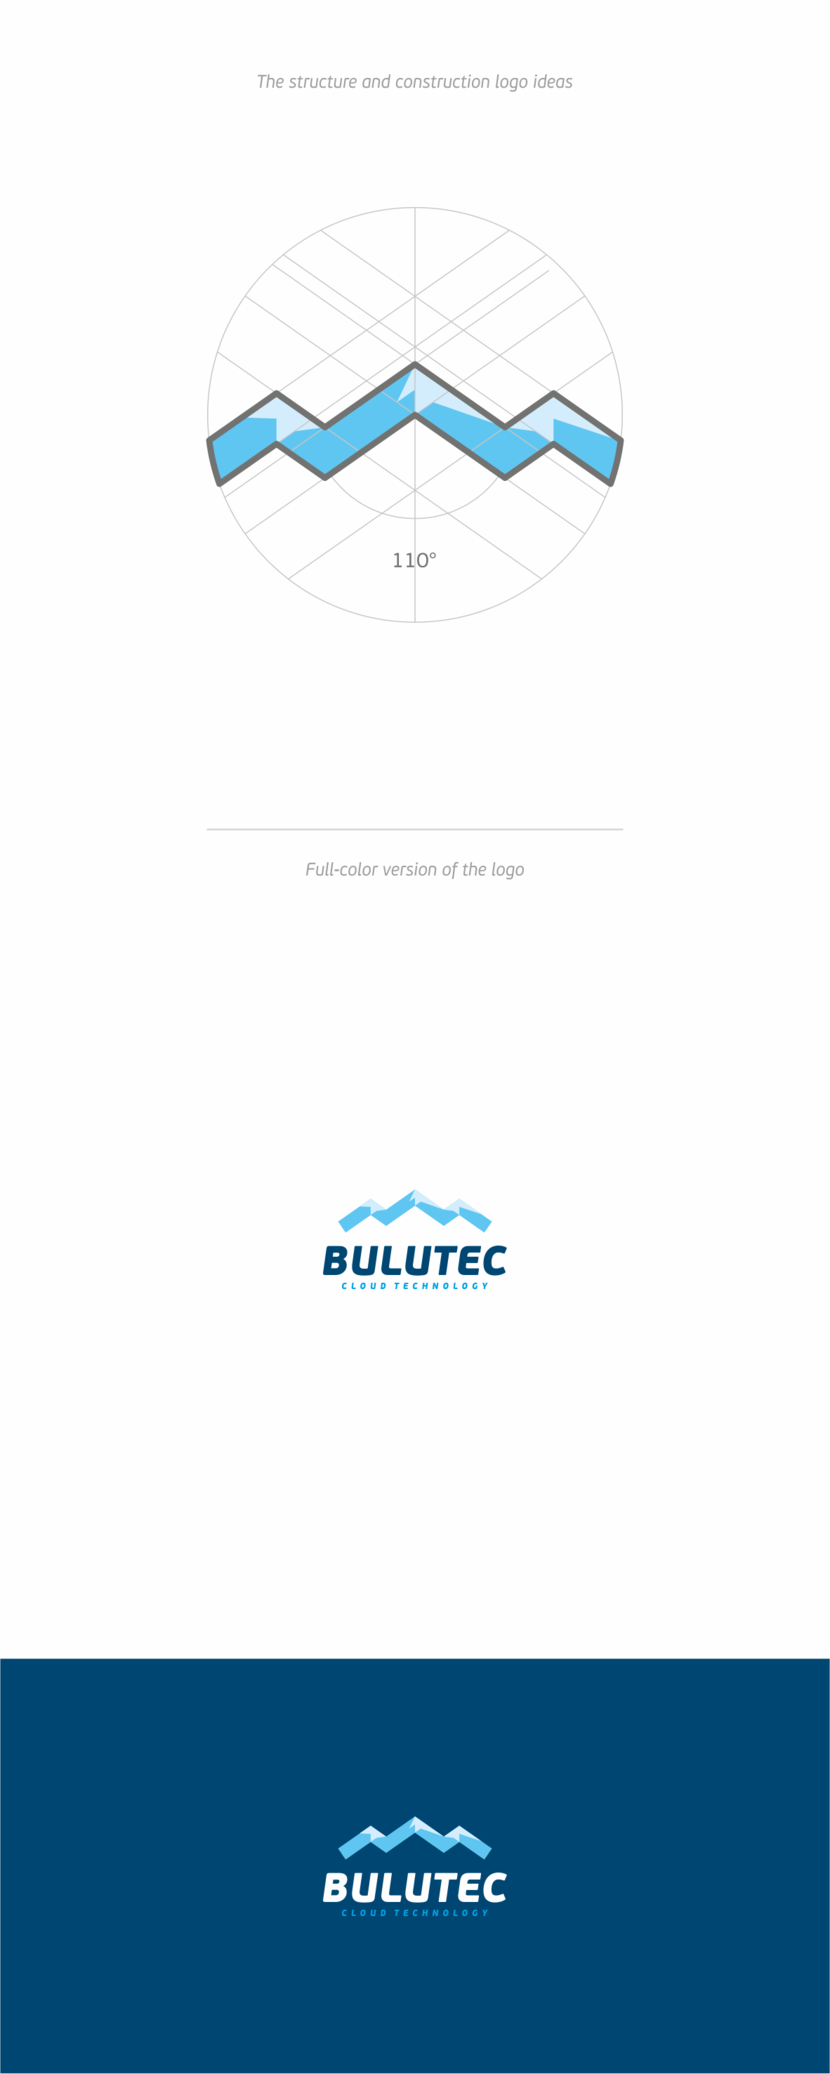 + по всей видимости вы об этом варианте, если правильно понимаем Разработка логотипа для компании BULUTEC